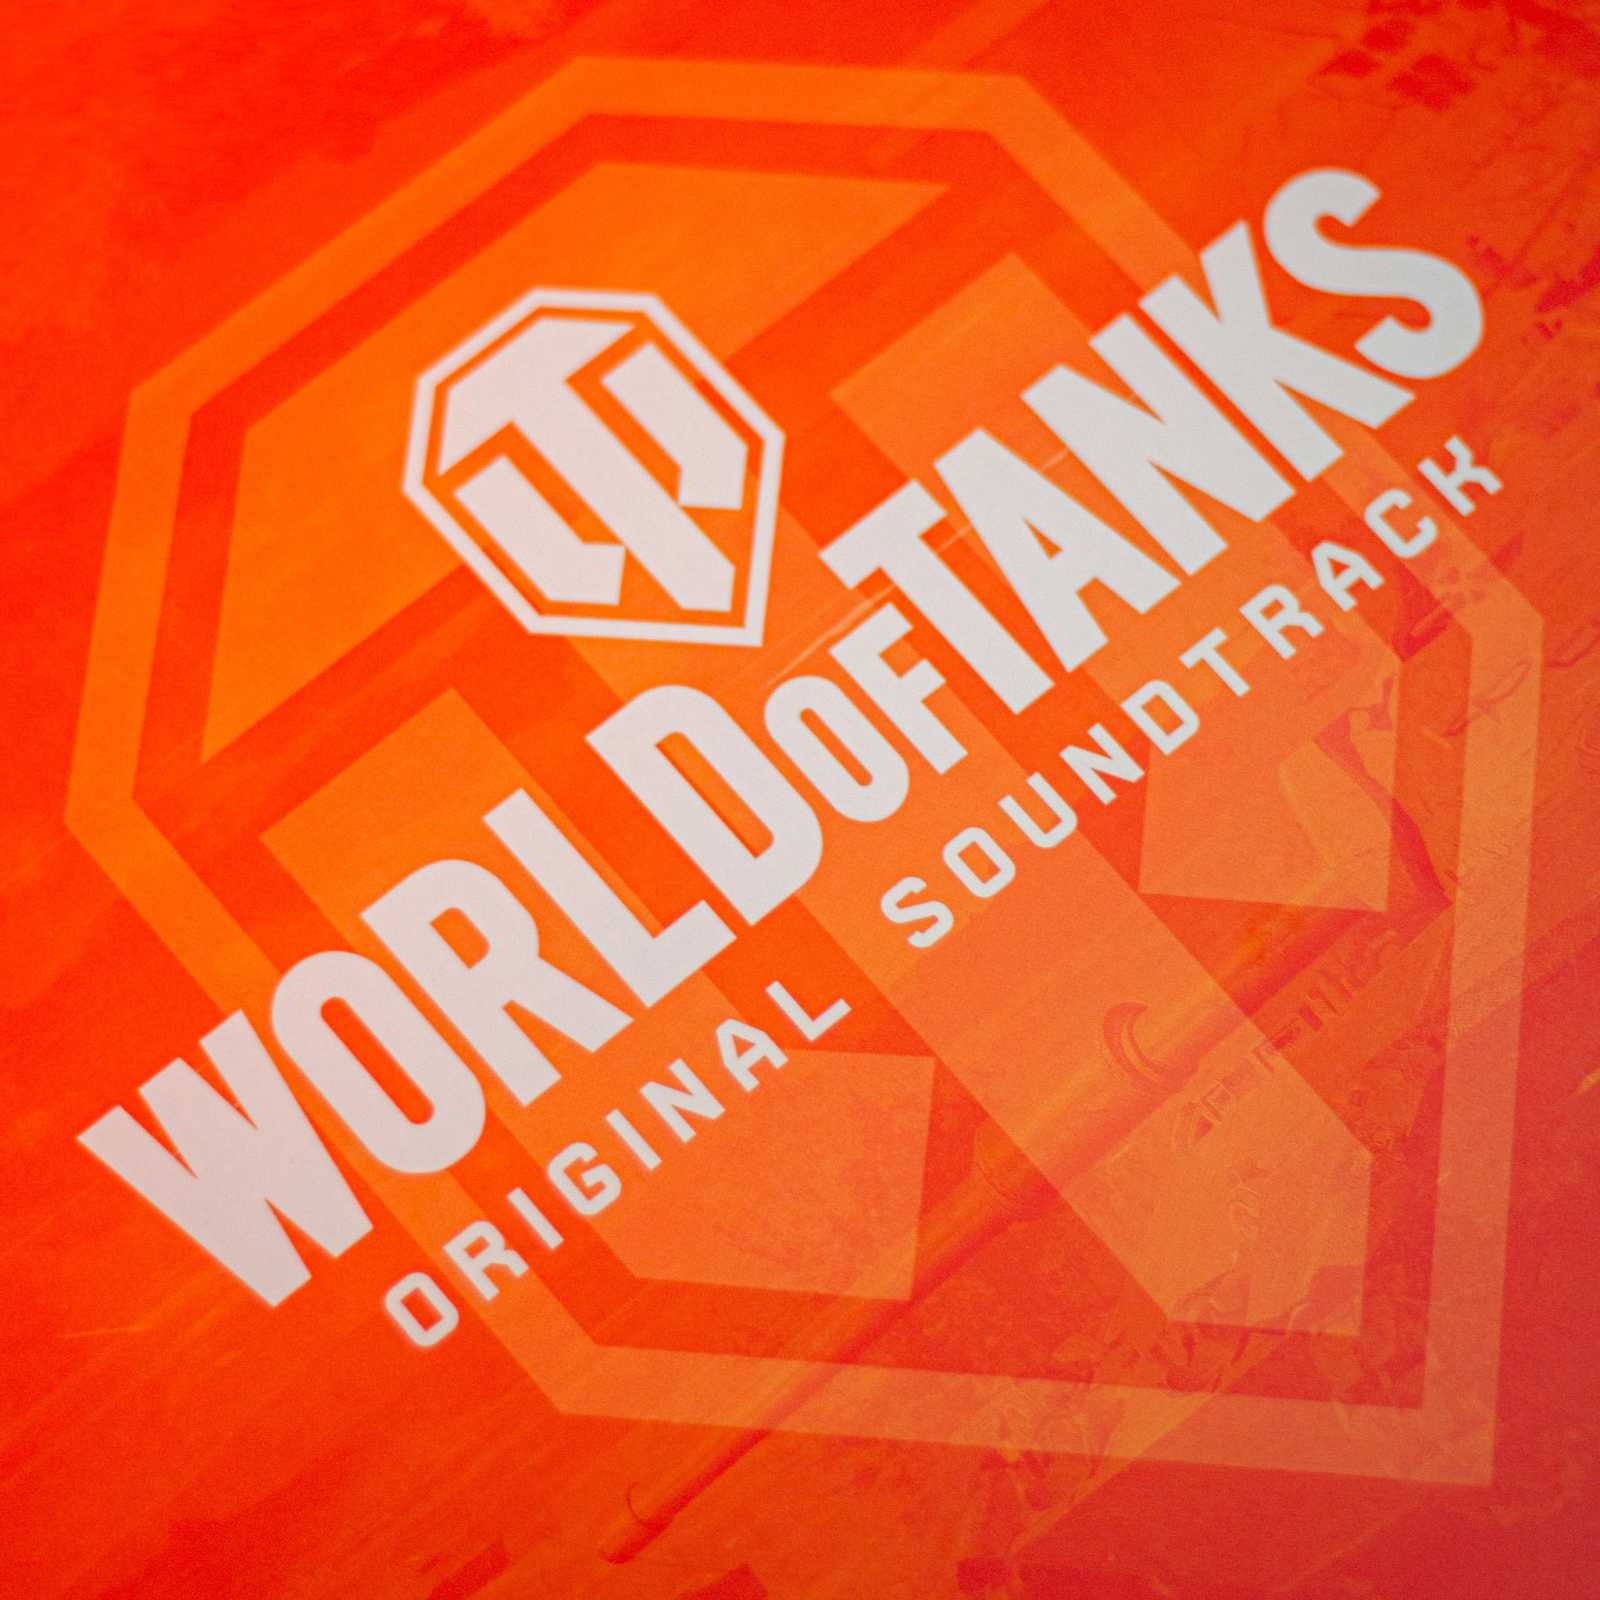 Melodie World of Tanks poprvé na vinylové desce